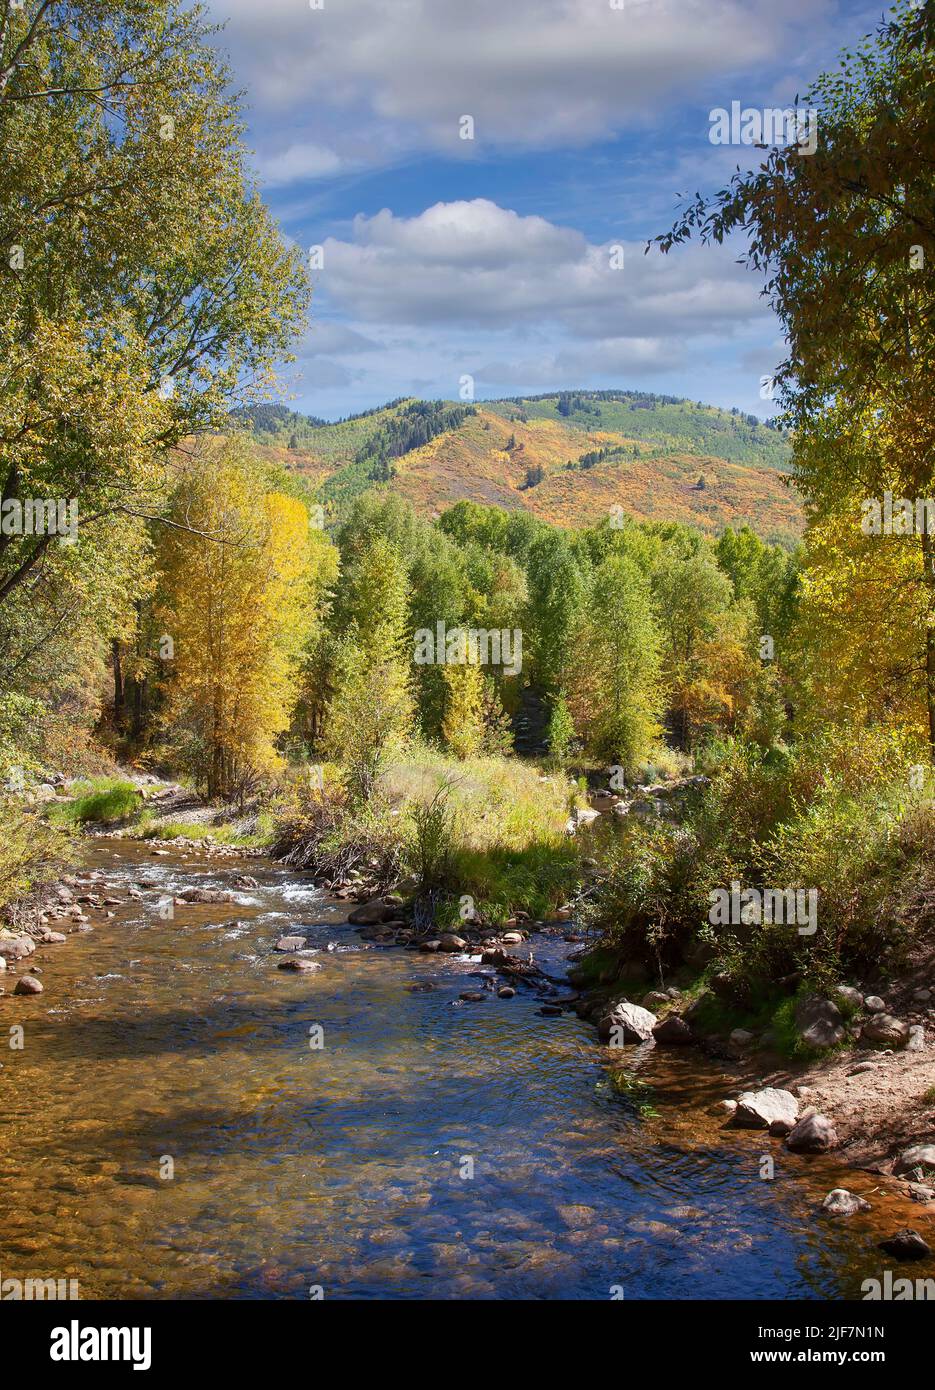 Arroyo y colorido paisaje en el país de Colorado Foto de stock